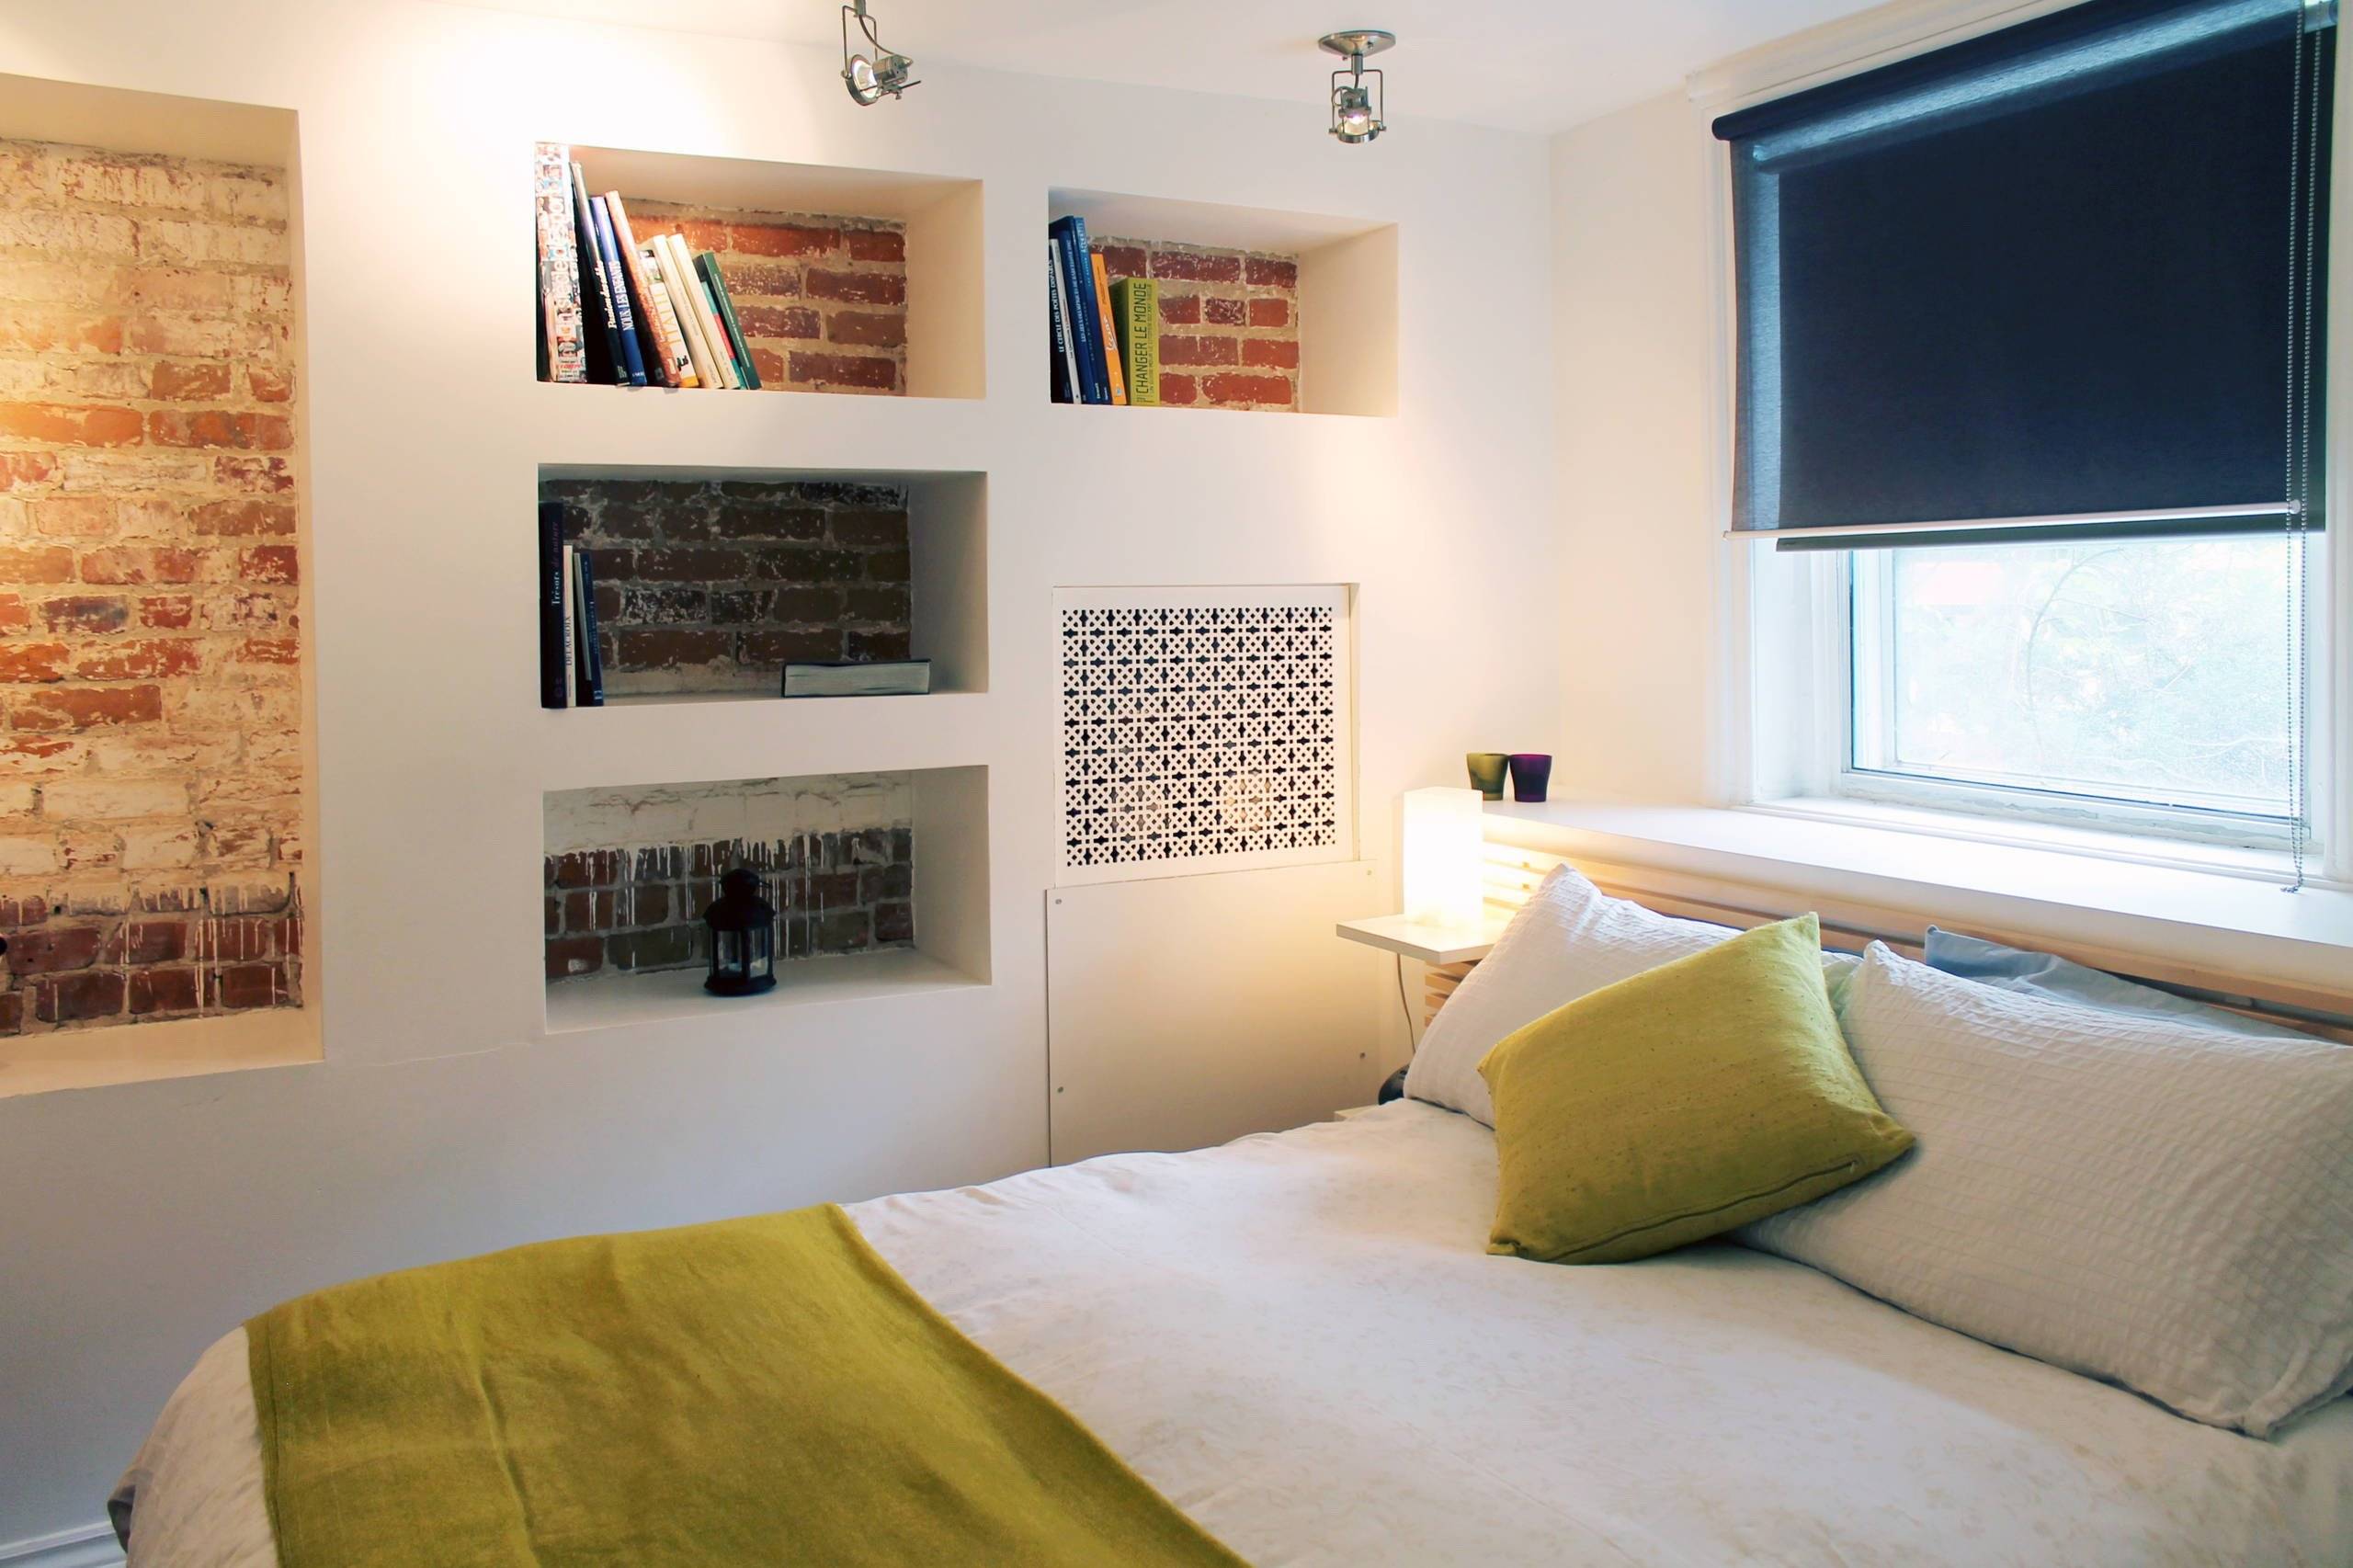 32 идеи для декорирования пространства над кроватью